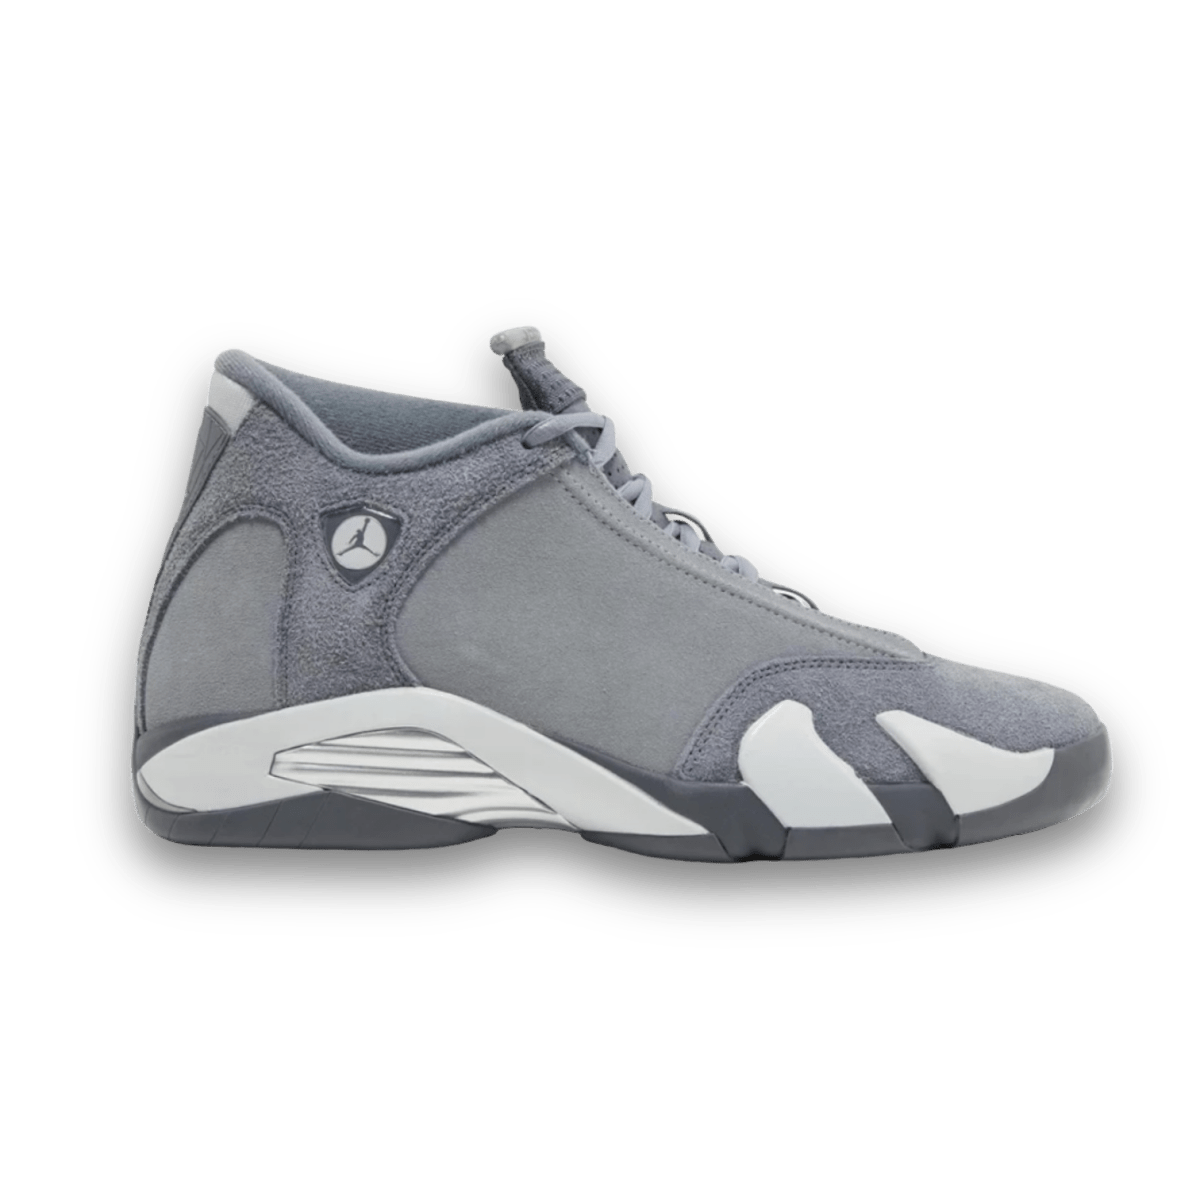 Air Jordan 14 Retro "Flint Grey" - Mid Sneaker - Jawns on Fire Sneakers & Streetwear